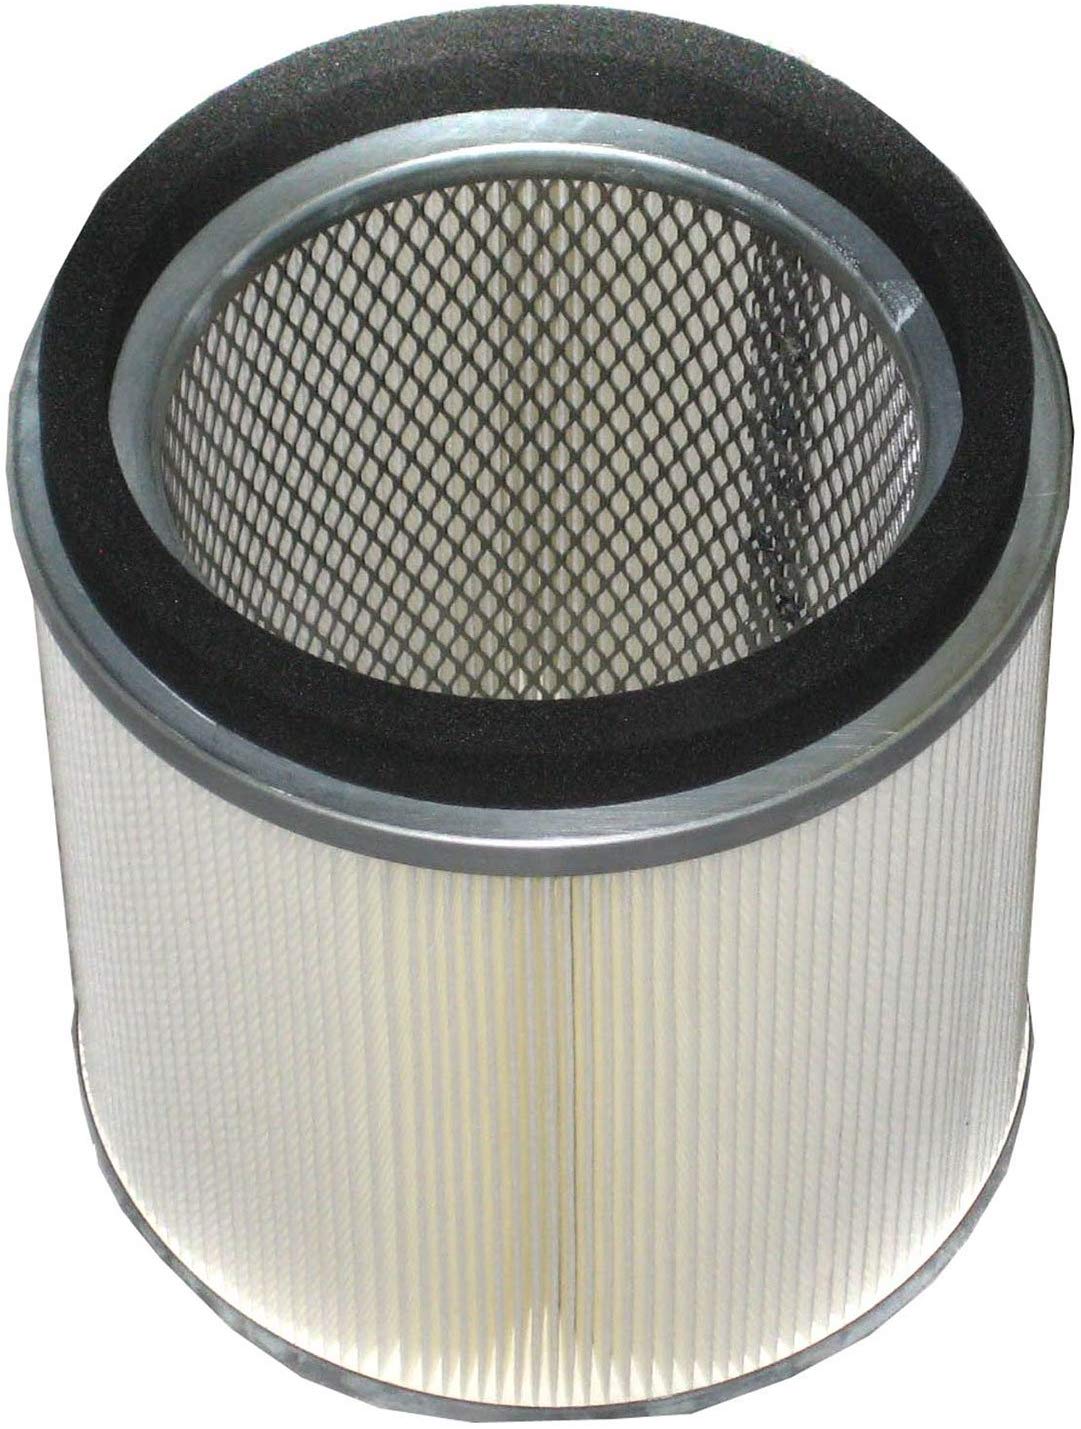 Nilfisk Drum Wet/Dry Cartridge Filter for VHS255 - CalCleaningEquipment